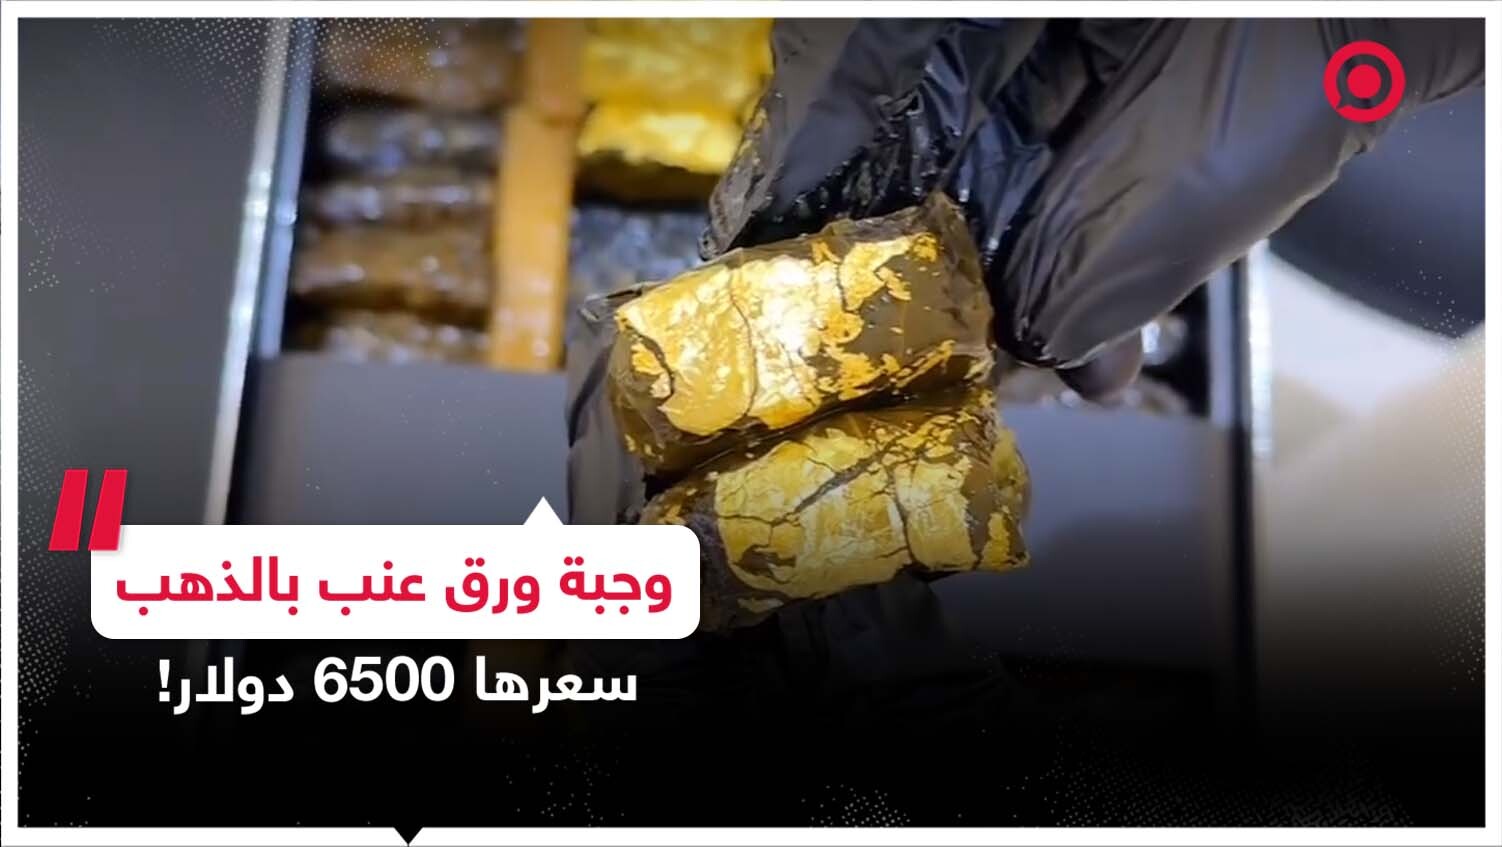 مطعم كويتي يقدم وجبات ورق عنب مطلية بالذهب بأسعار خيالية يثير الجدل